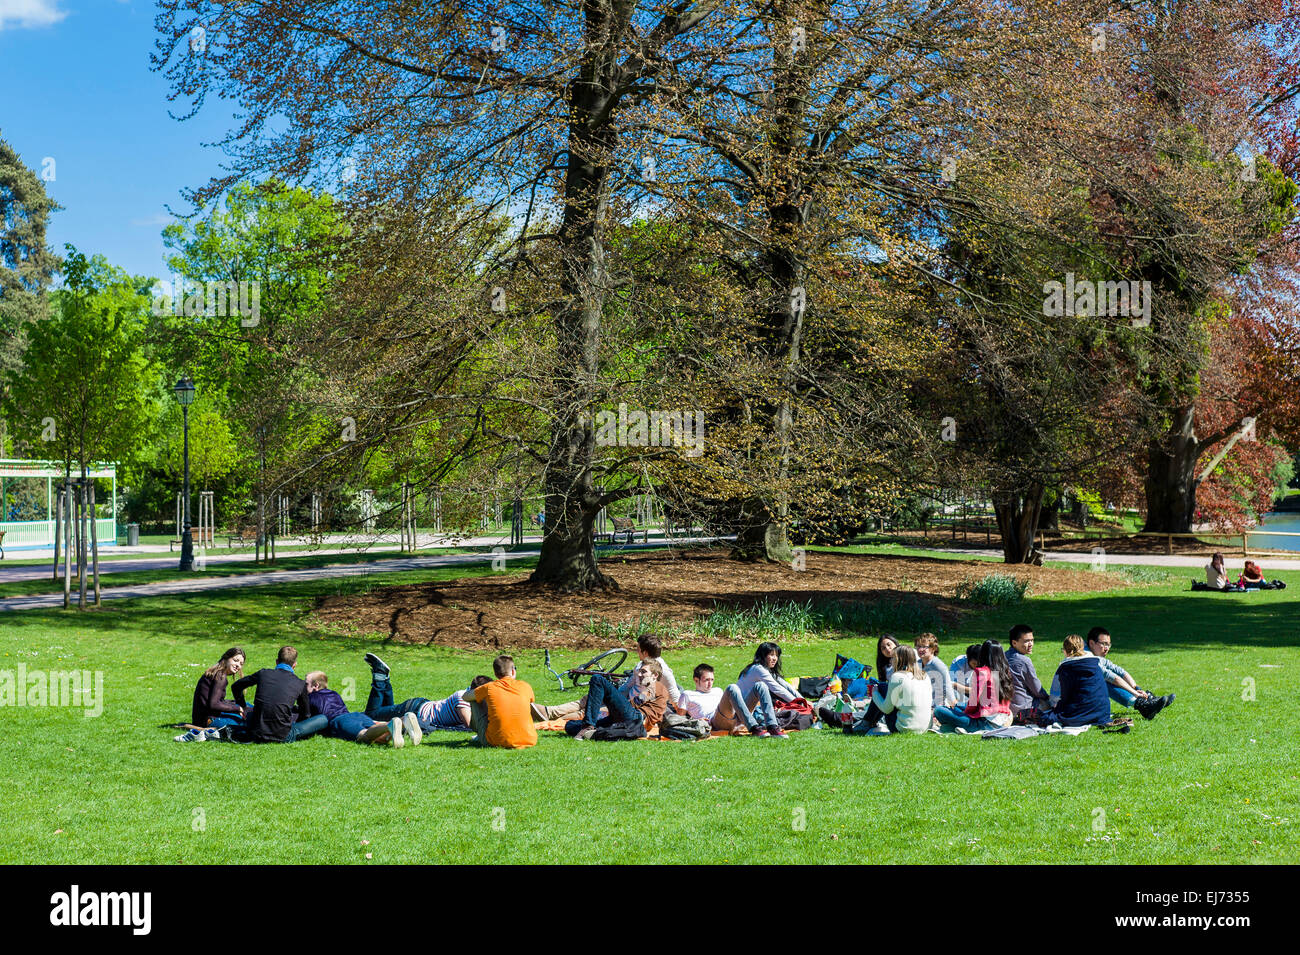 Gruppe von jungen Menschen im Parc de l'Orangerie park Strasbourg Elsass Frankreich Europa Stockfoto